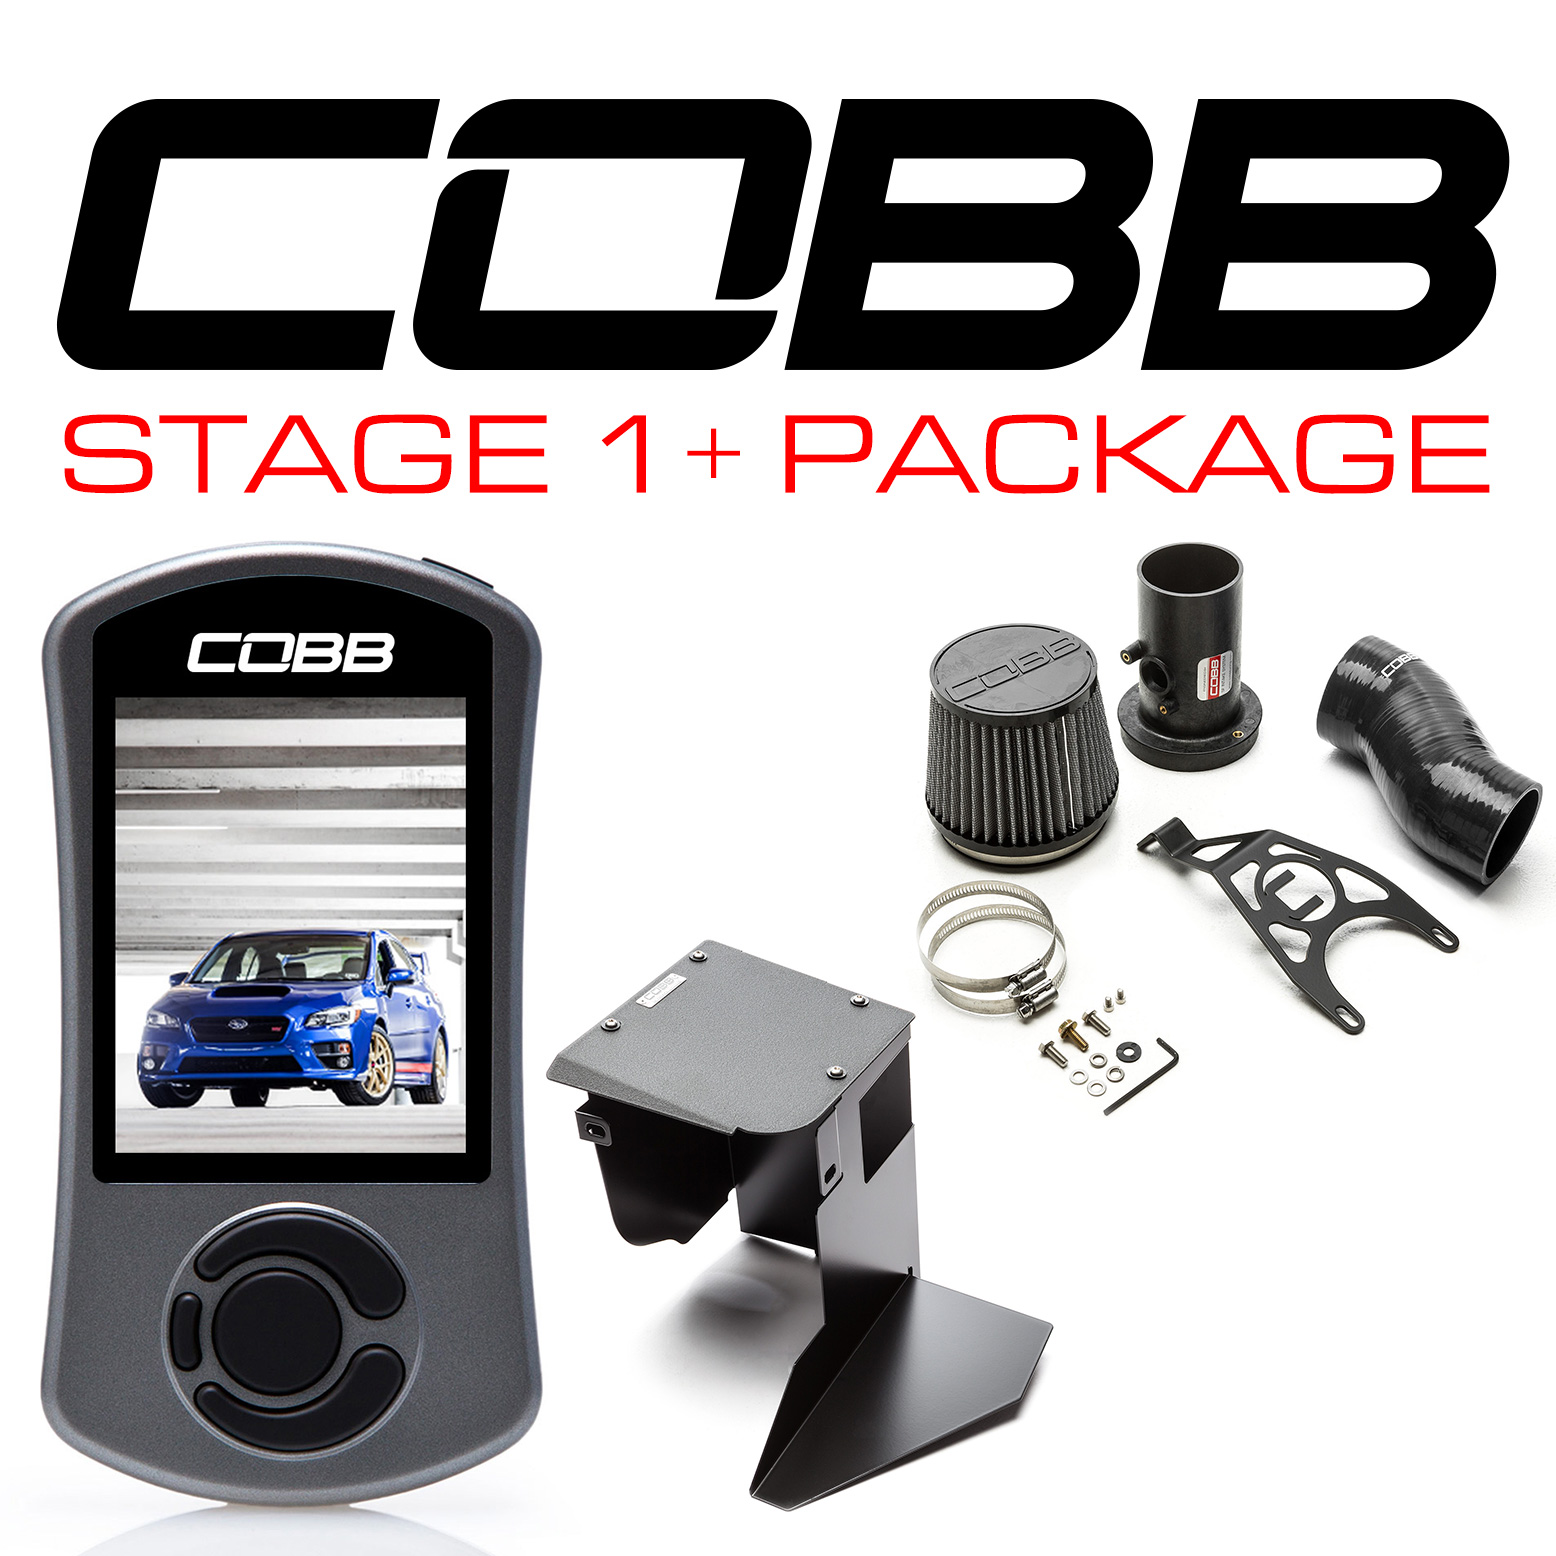 Power package. Субару Стейдж. Cobb Subaru. Классификация тюнинга Stage. ENGINEVOX коробка Stage 1+.